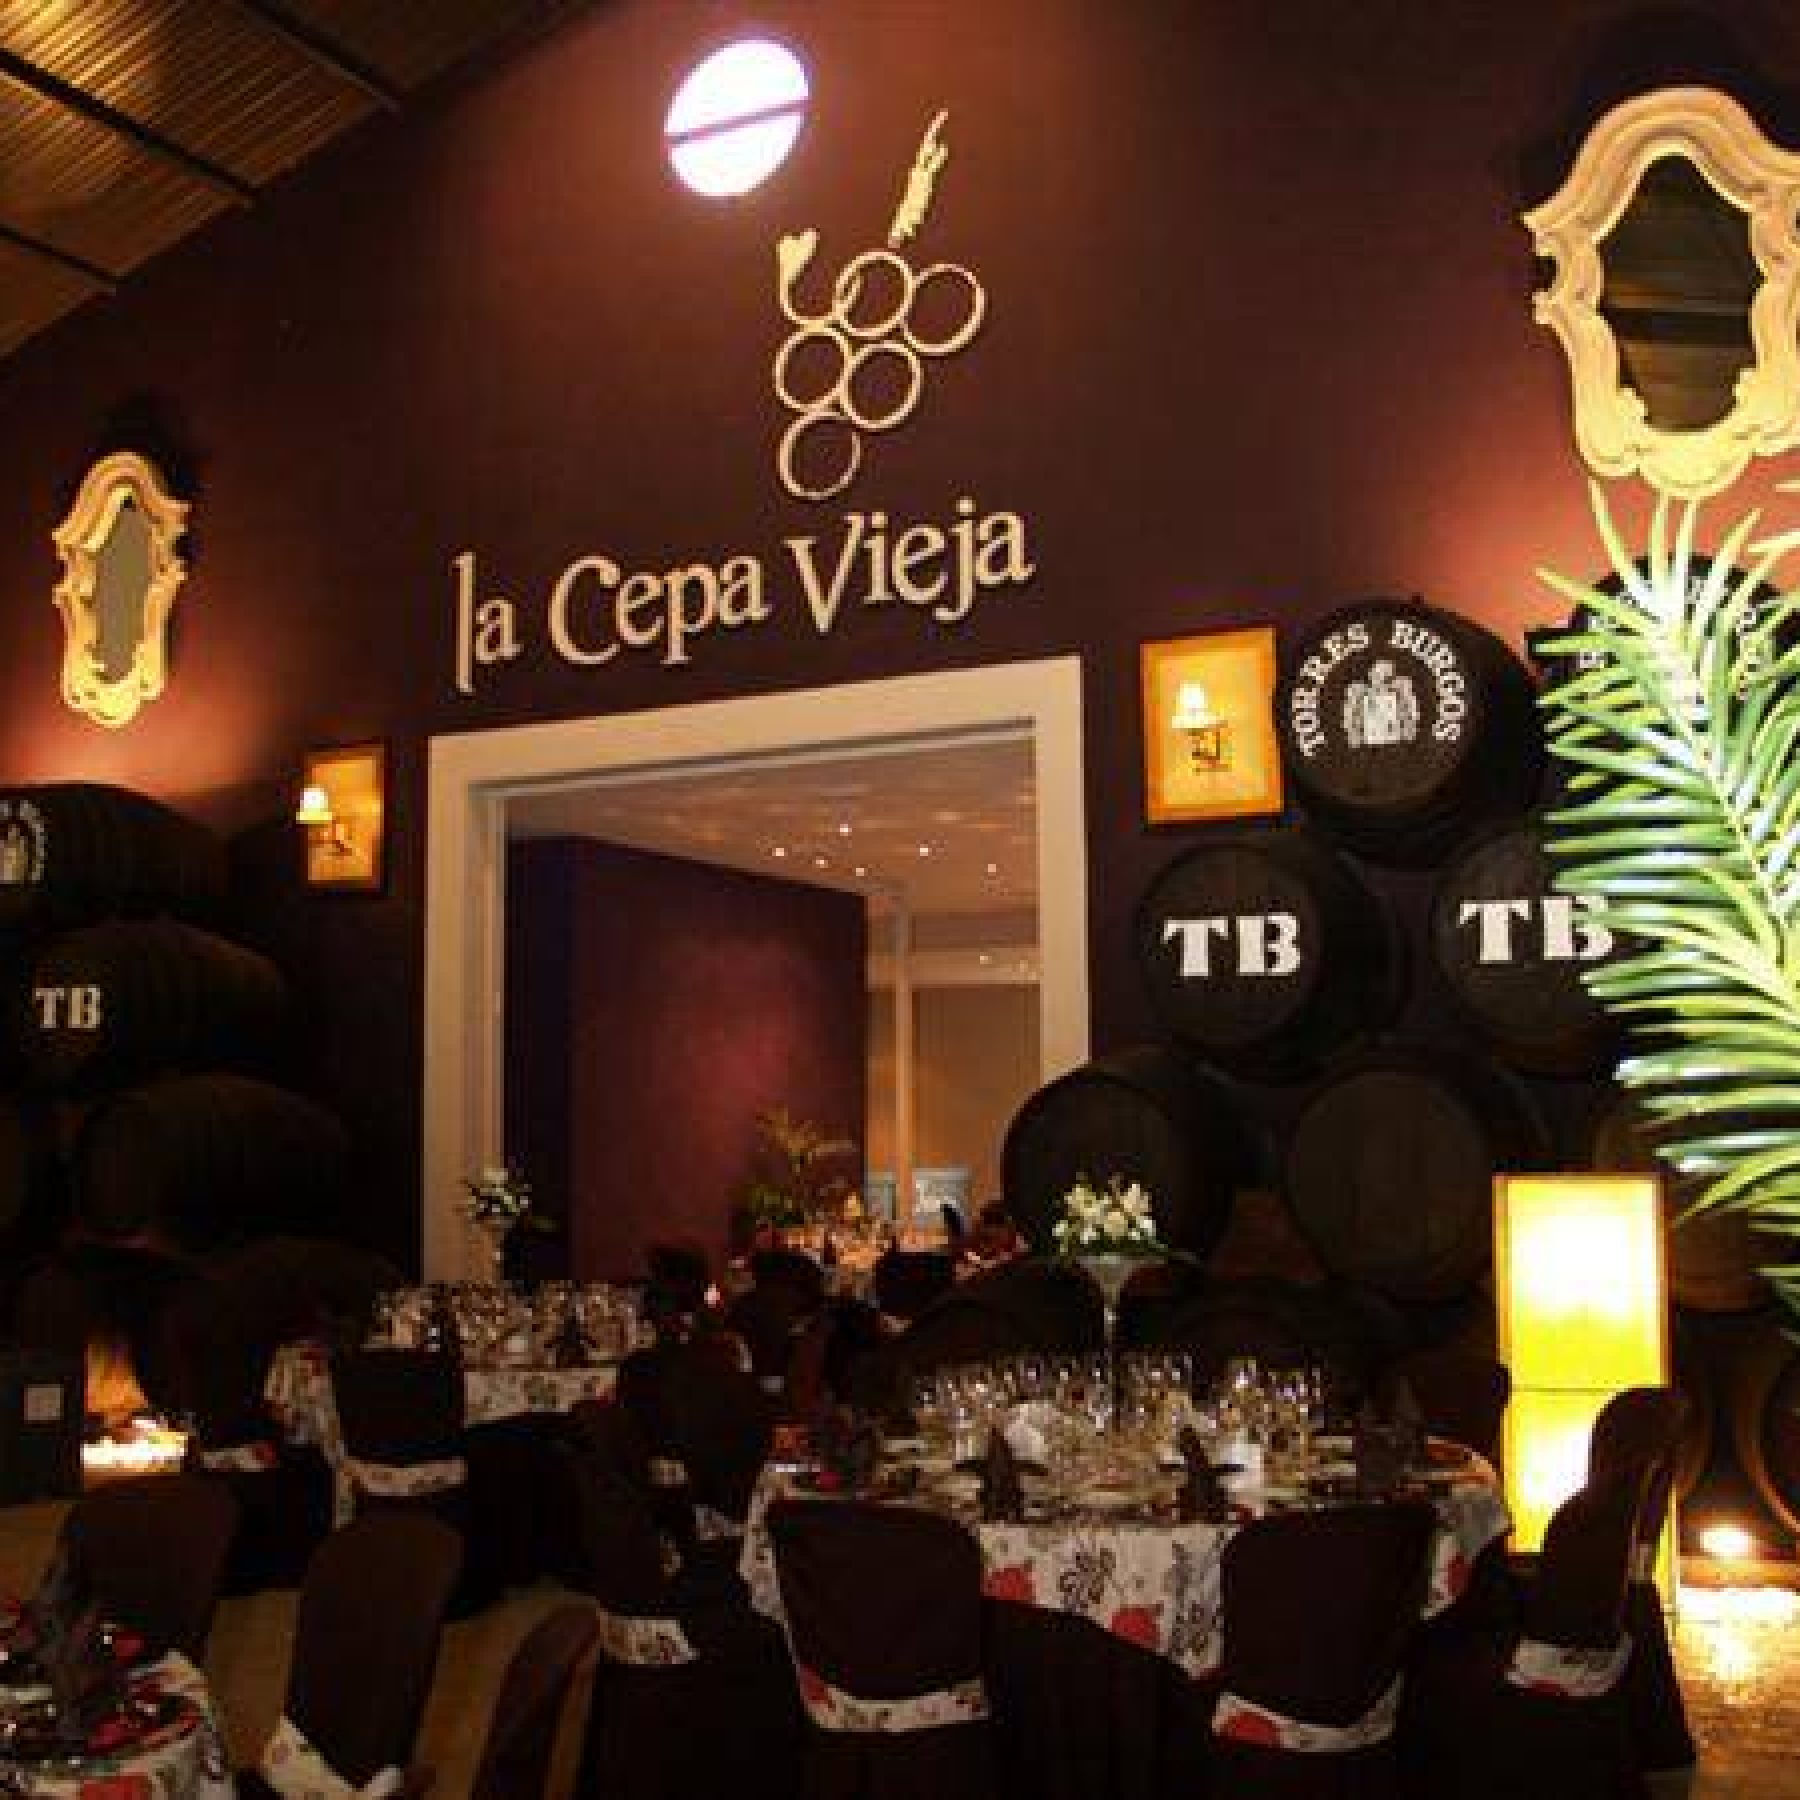 Winery tour and tasting, Bodegas Herederos Torres Burgos, Lucena